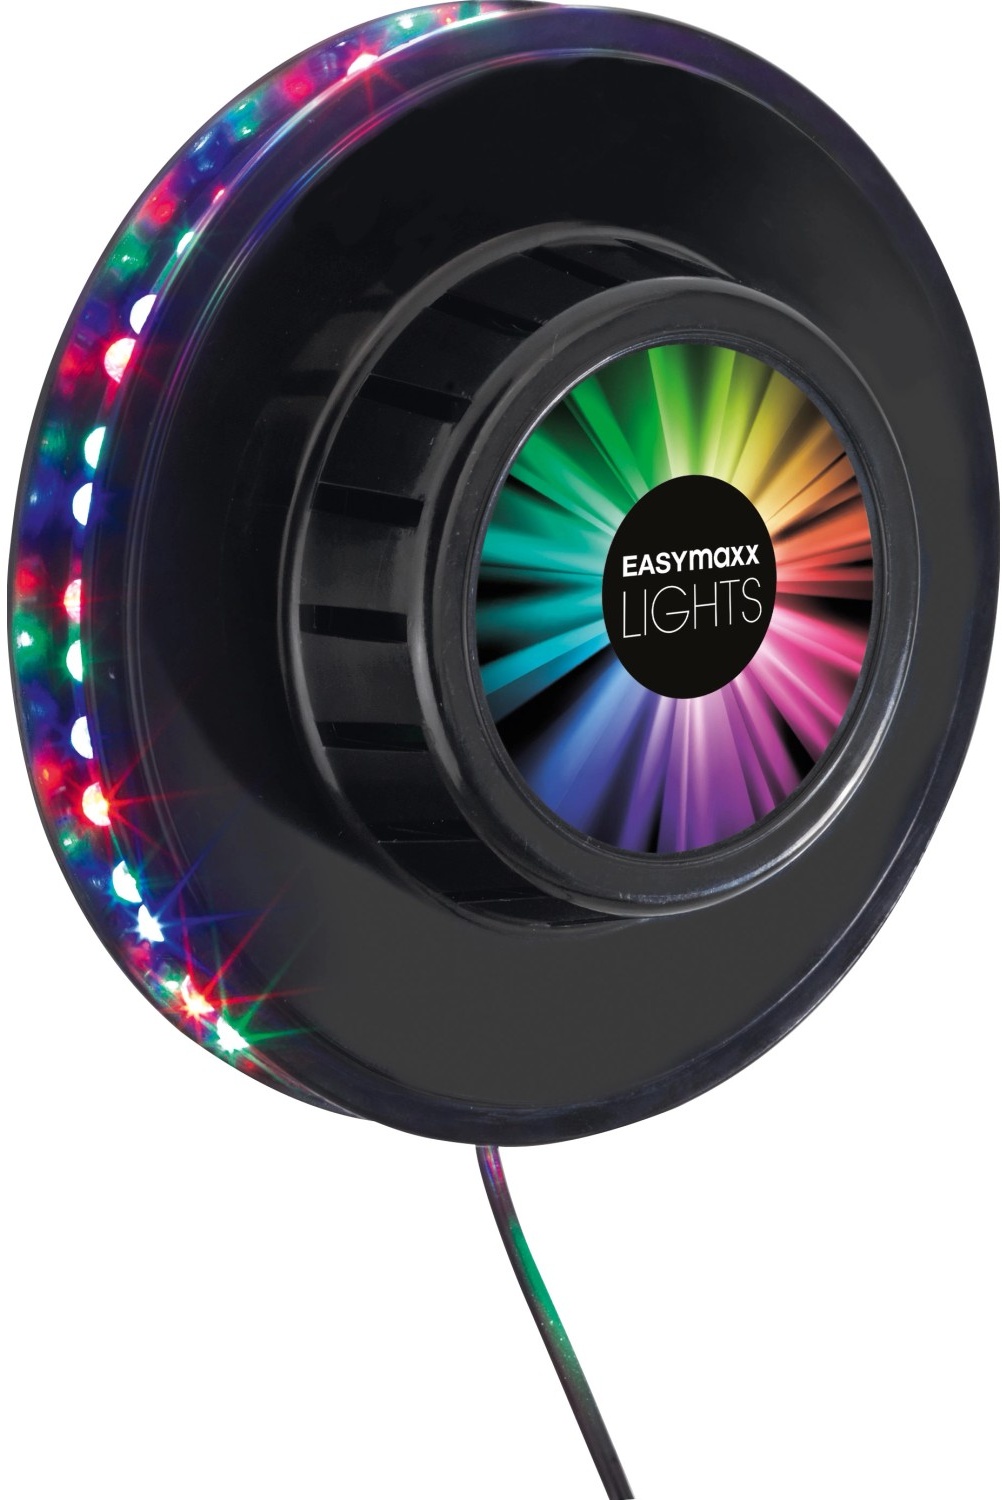 Easymaxx LED-Lichtrad Galaxy